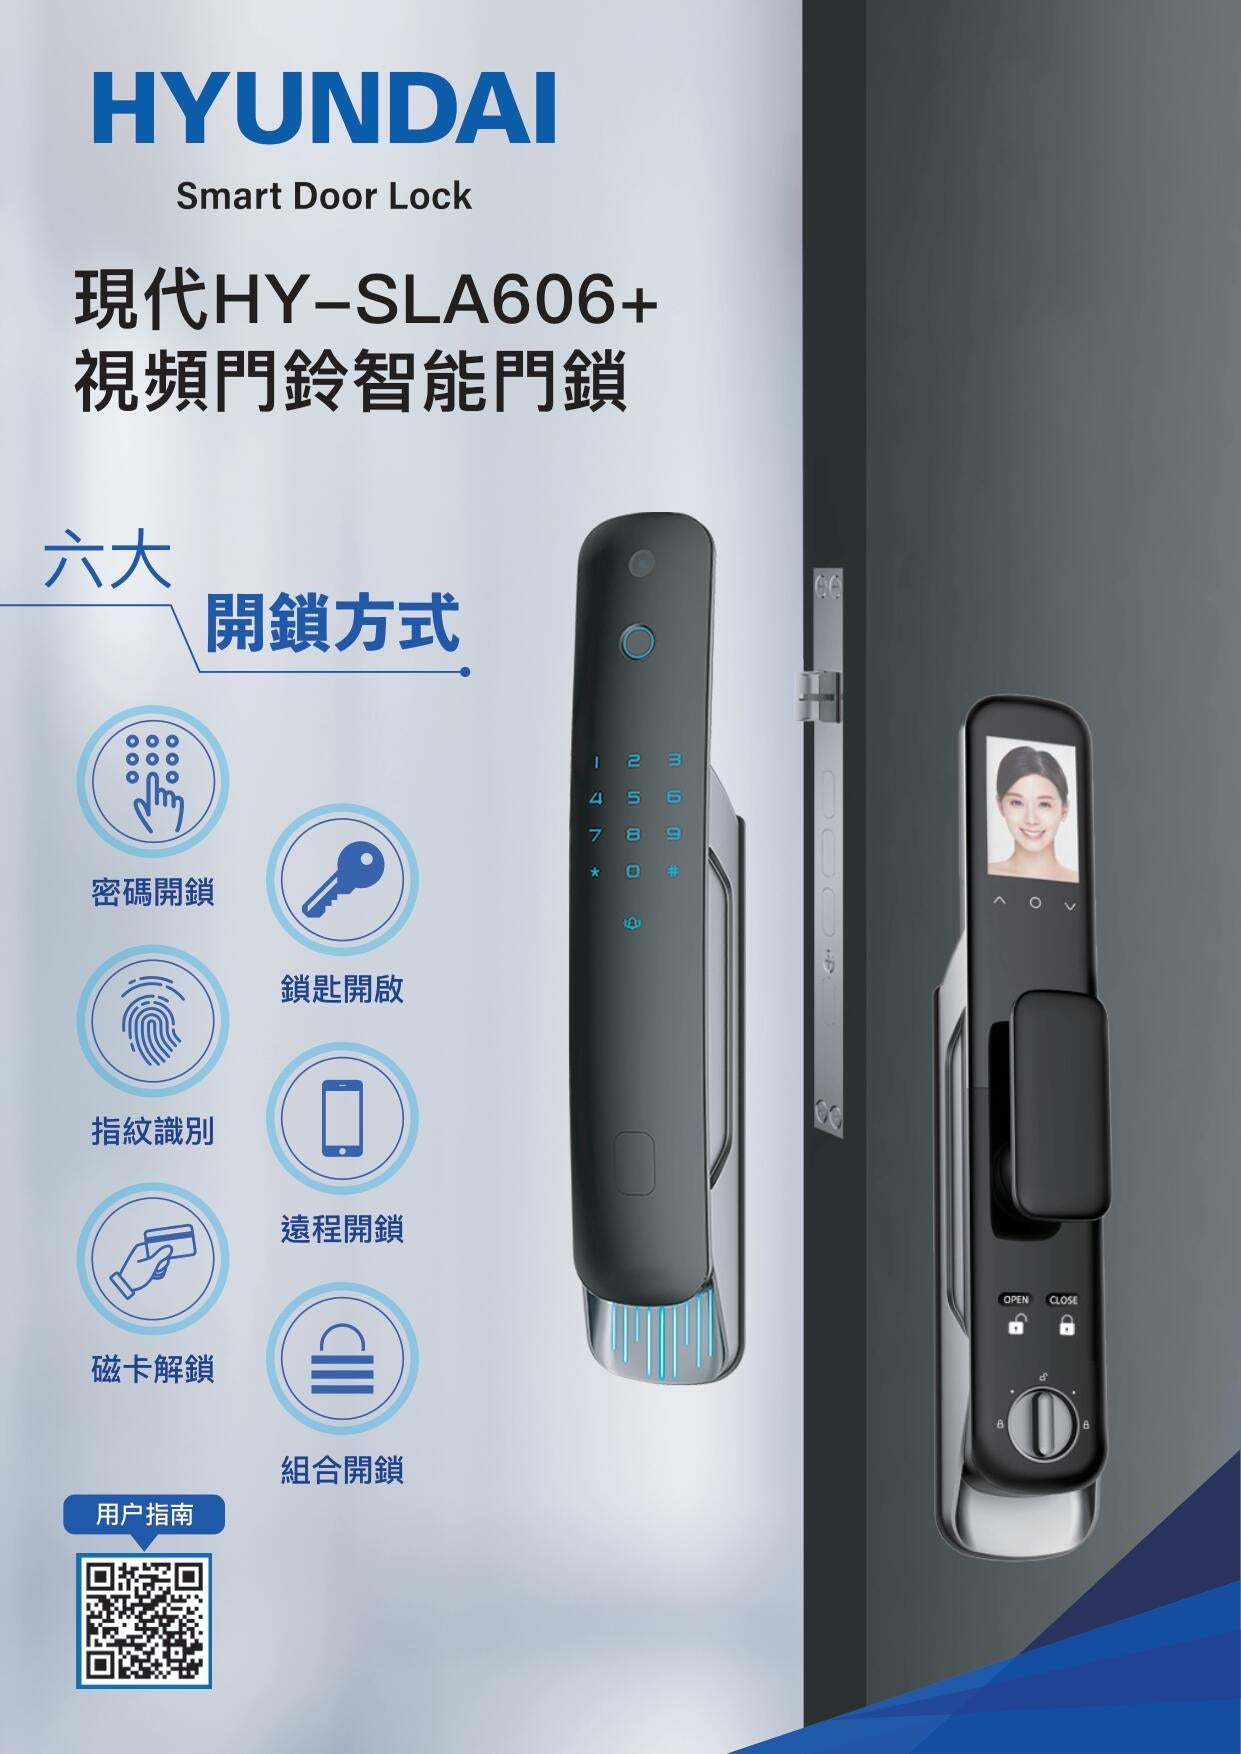 Hyundai 現代 HY - SLA606+ WiFi視頻門鈴智能鎖 - Fever Electrics 電器熱網購平台